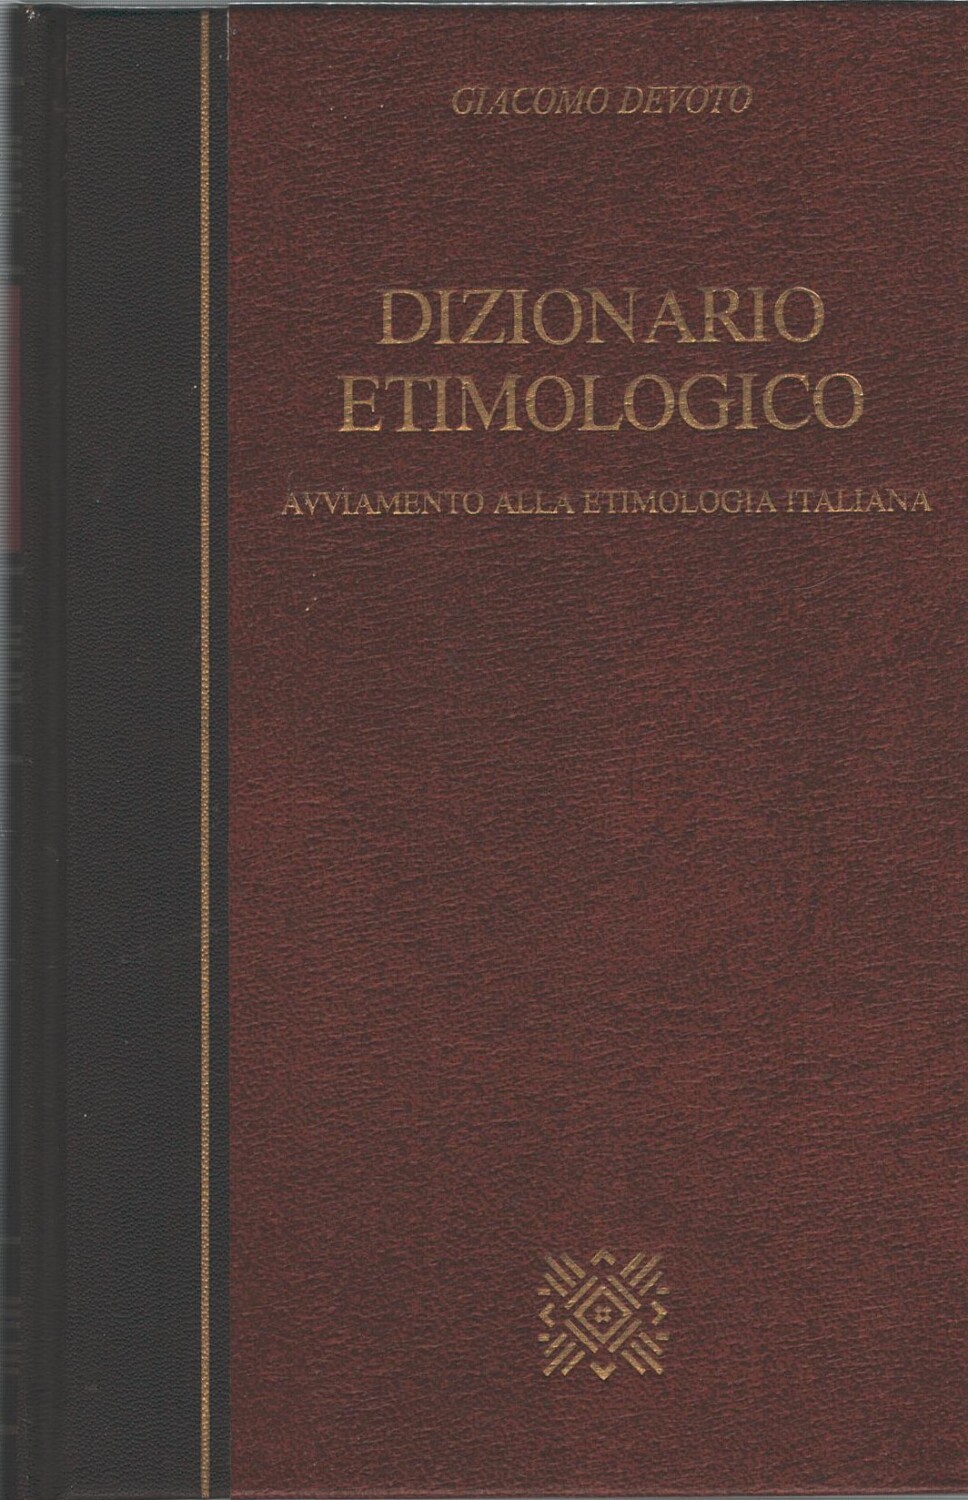 Dizionario Etimologico di Giacomo Devoto ed. CDE Club degli